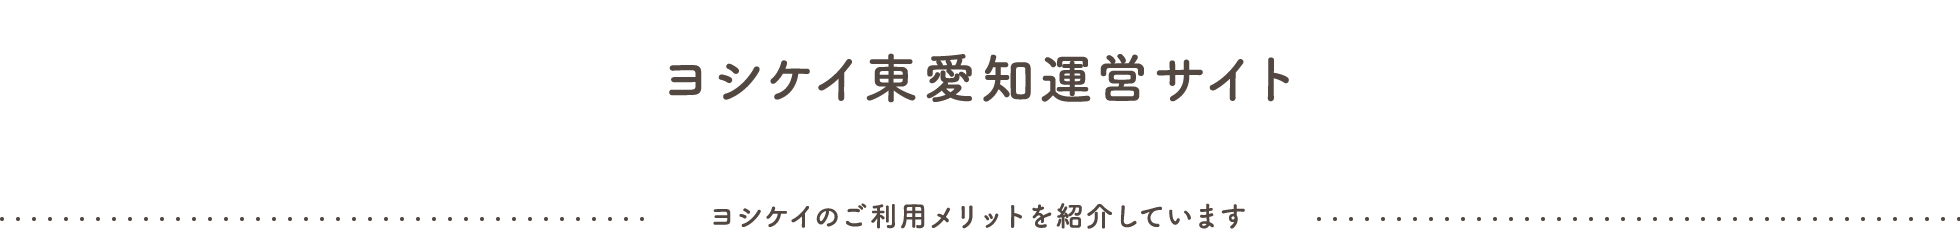 ヨシケイ東愛知運営サイト / ヨシケイのご利用メリットを紹介しています